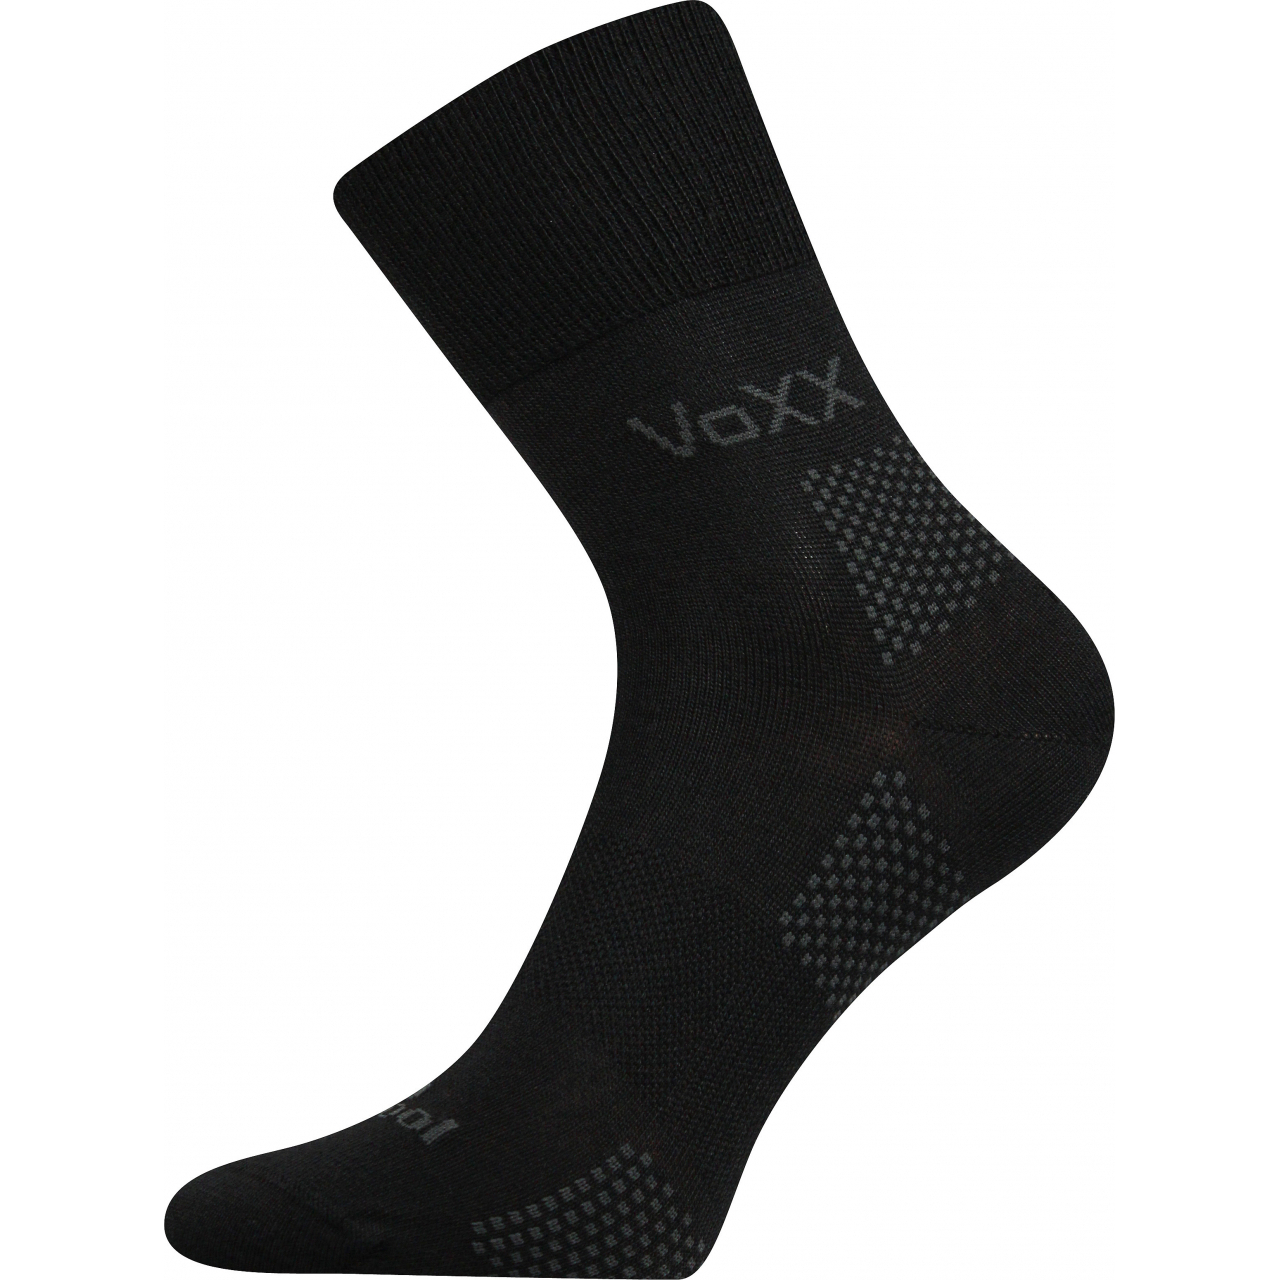 Ponožky funkční unisex Voxx Orionis ThermoCool - černé, 43-46